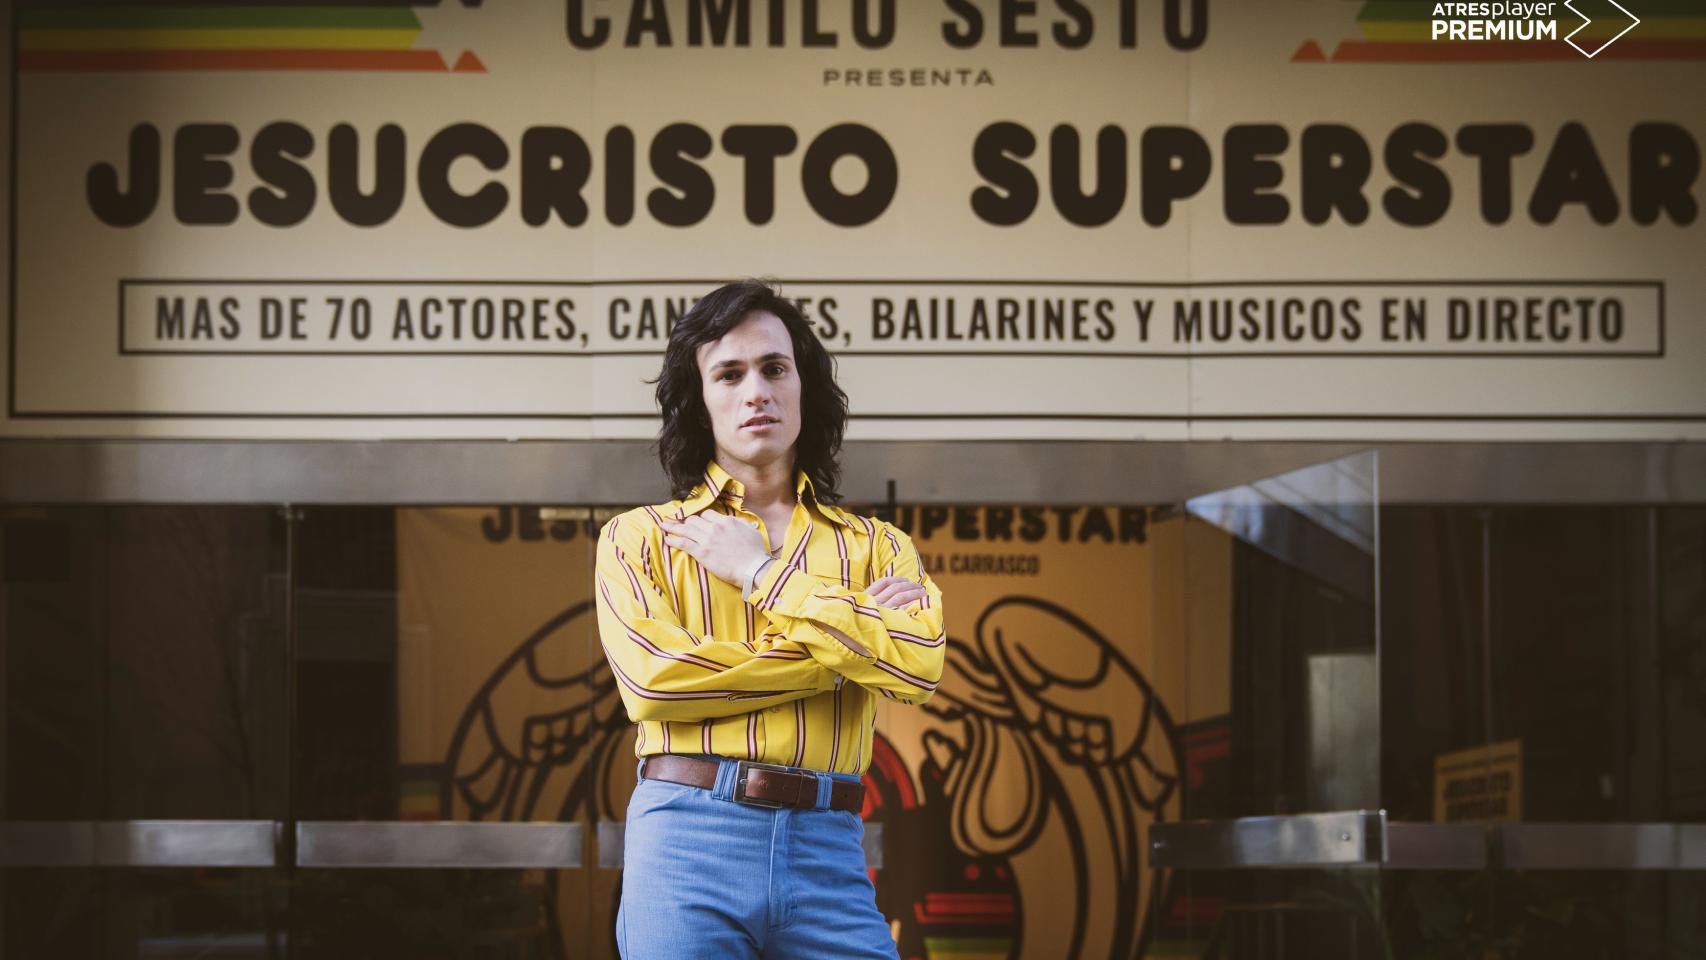 'Camilo Superstar', la serie sobre Camilo Sesto, tendrá cuatro episodios en Atresplayer.